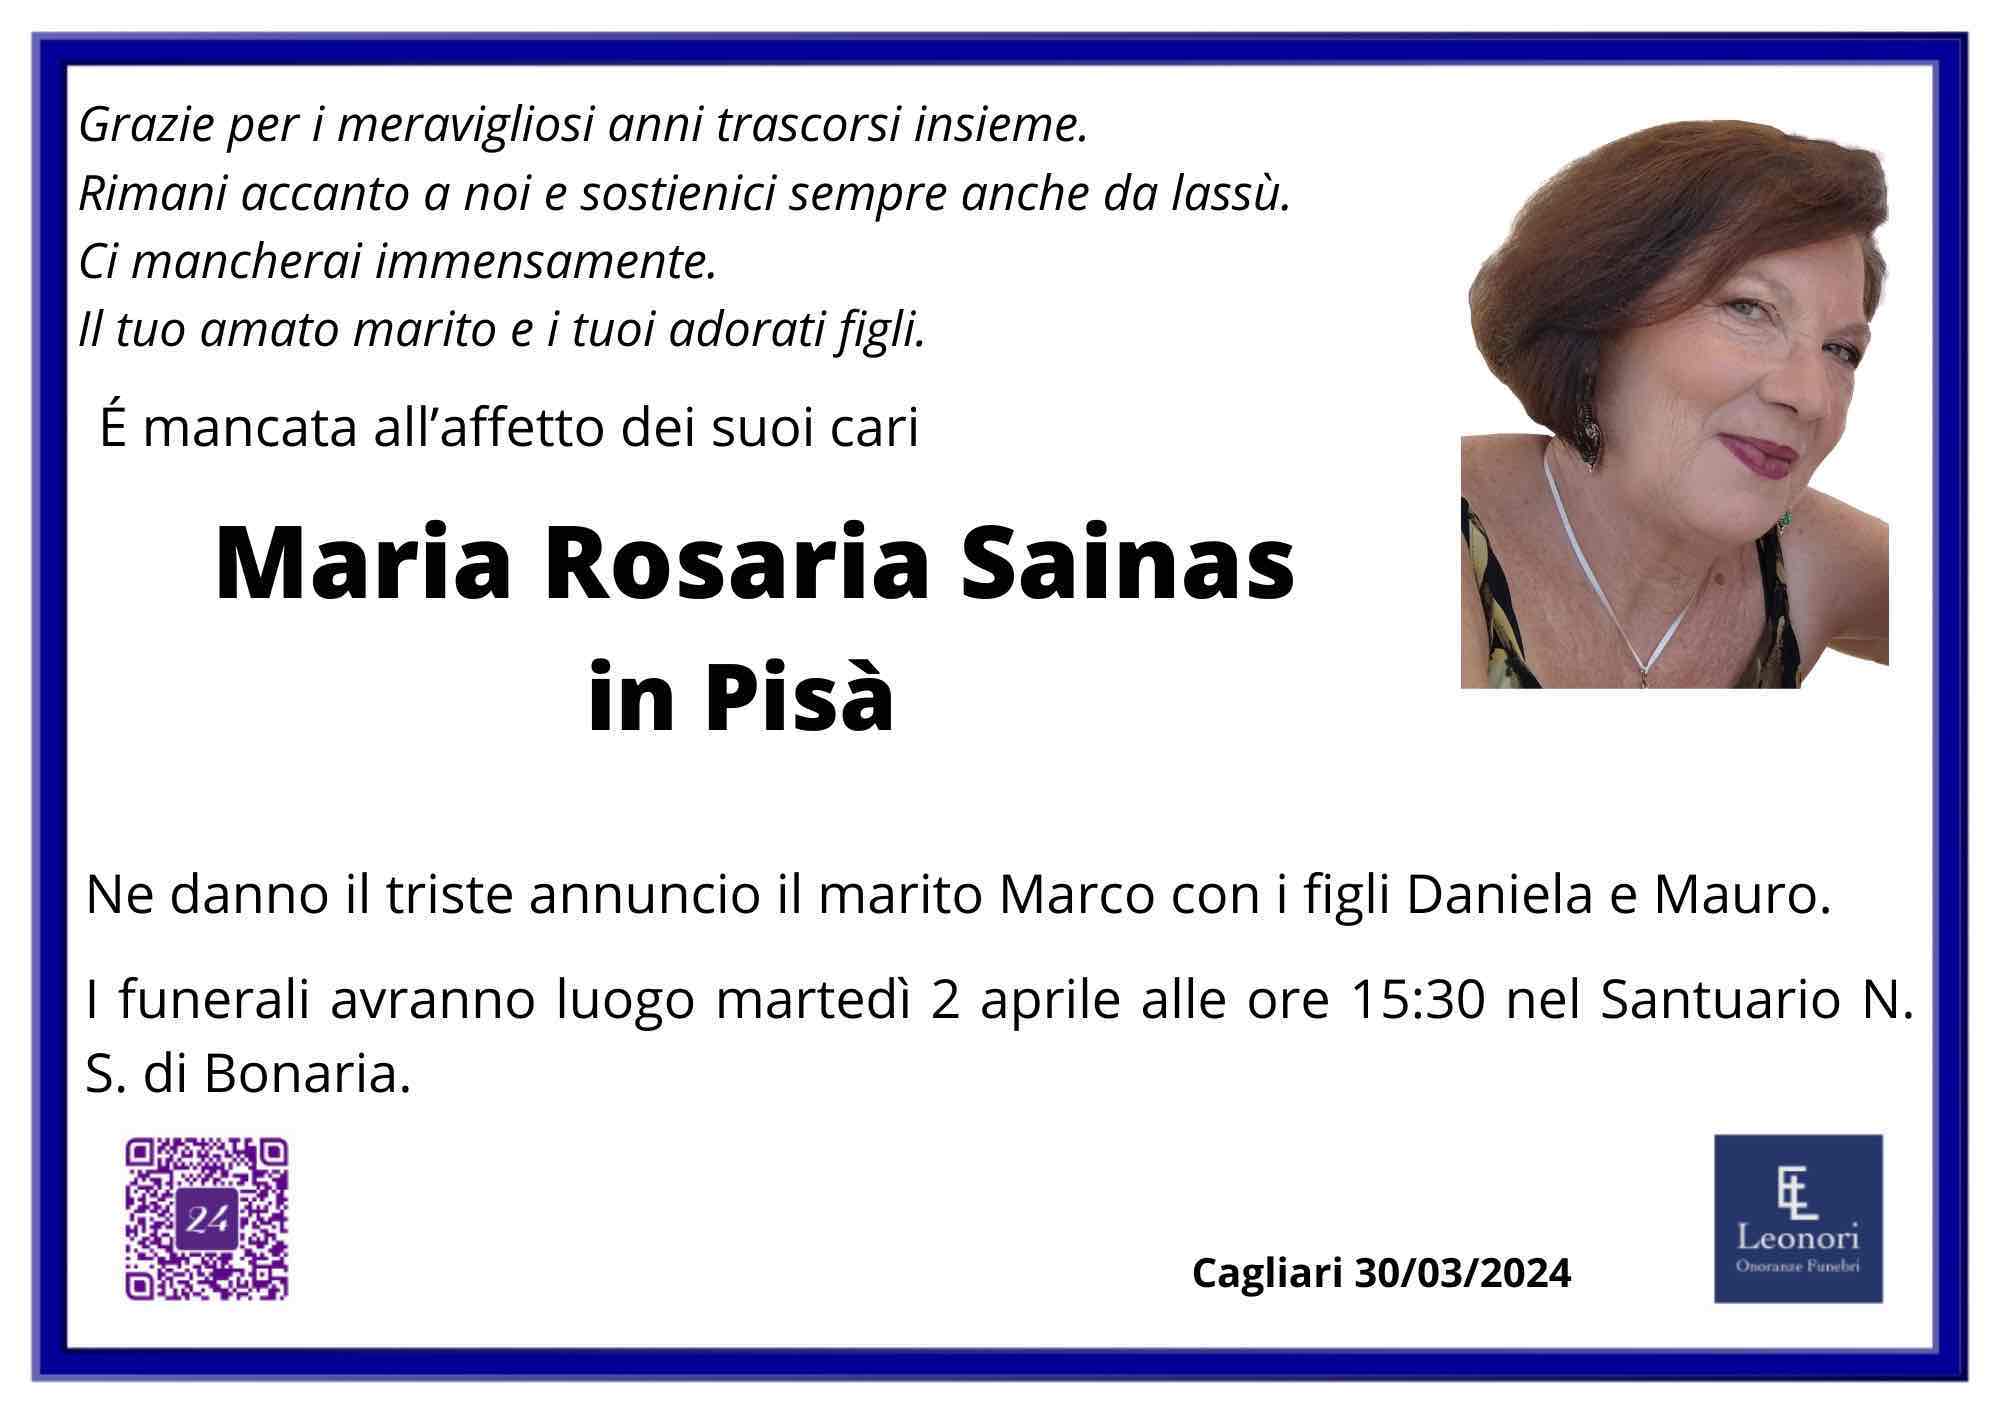 Maria Rosaria